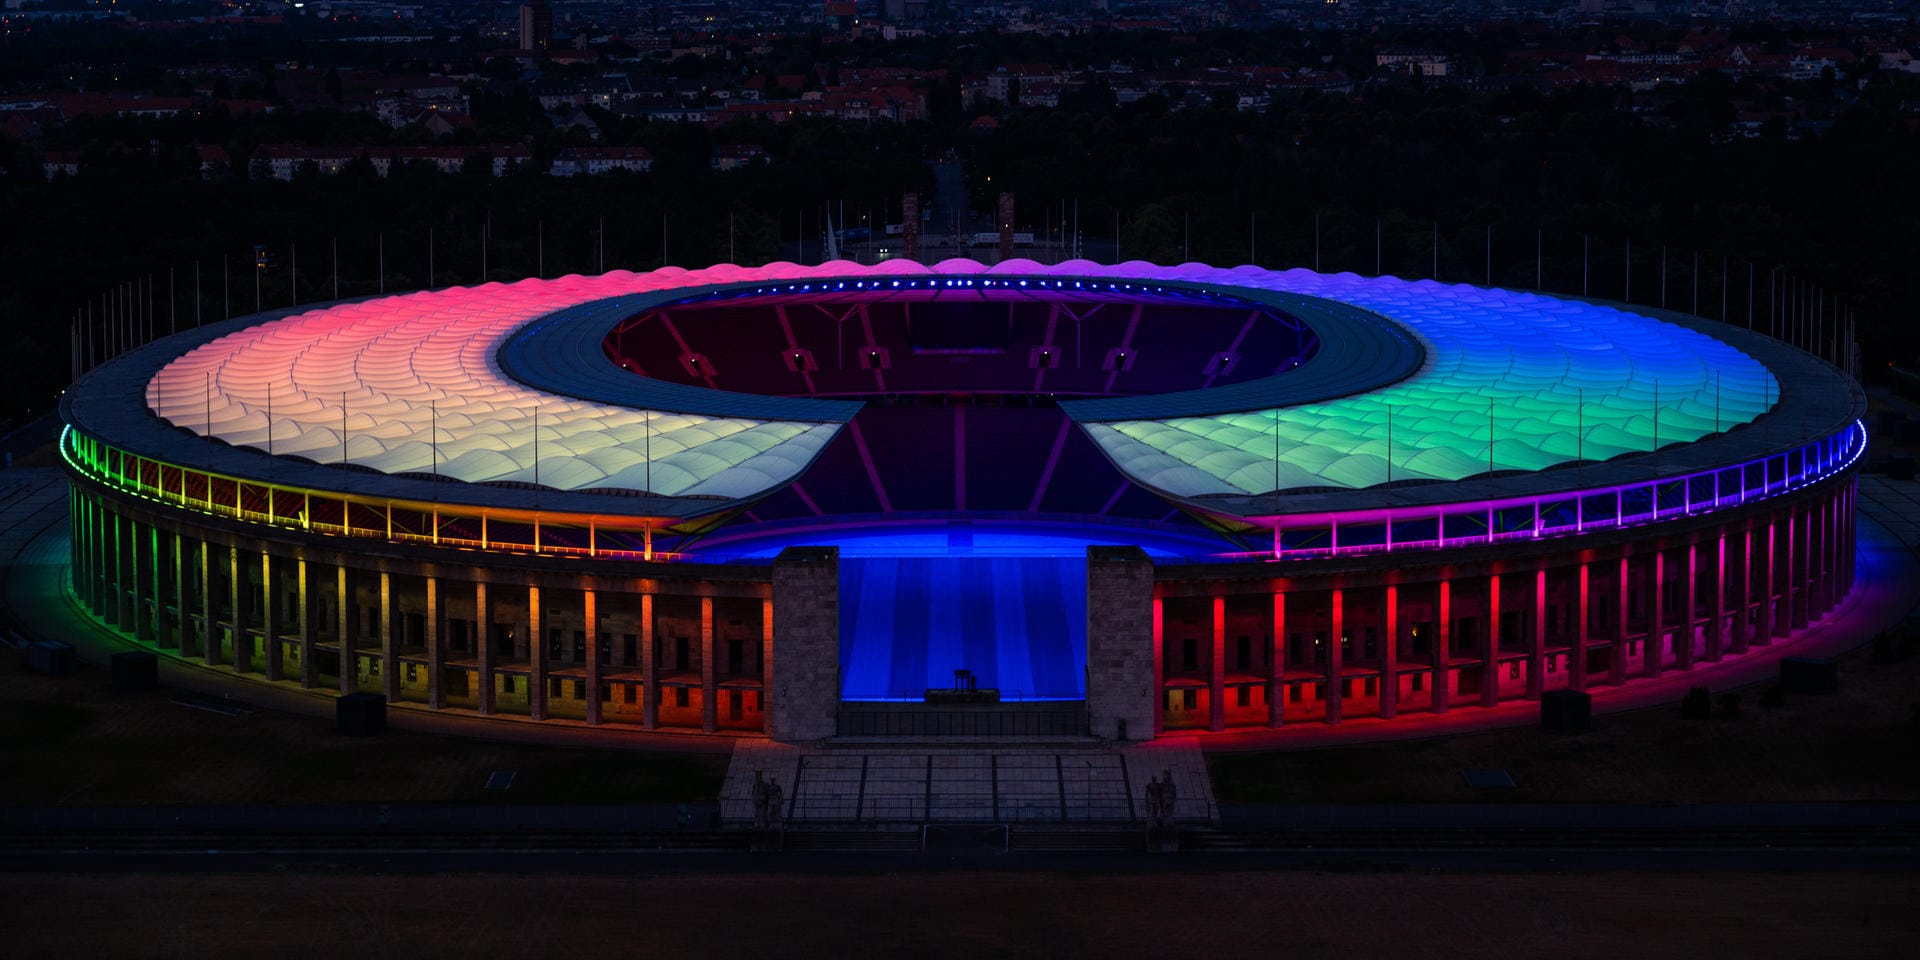 Während in München eine Beleuchtung von der Uefa verboten war, ließ man es sich in Berlin nicht nehmen, das Stadion in Regenbogen-Licht zu hüllen.